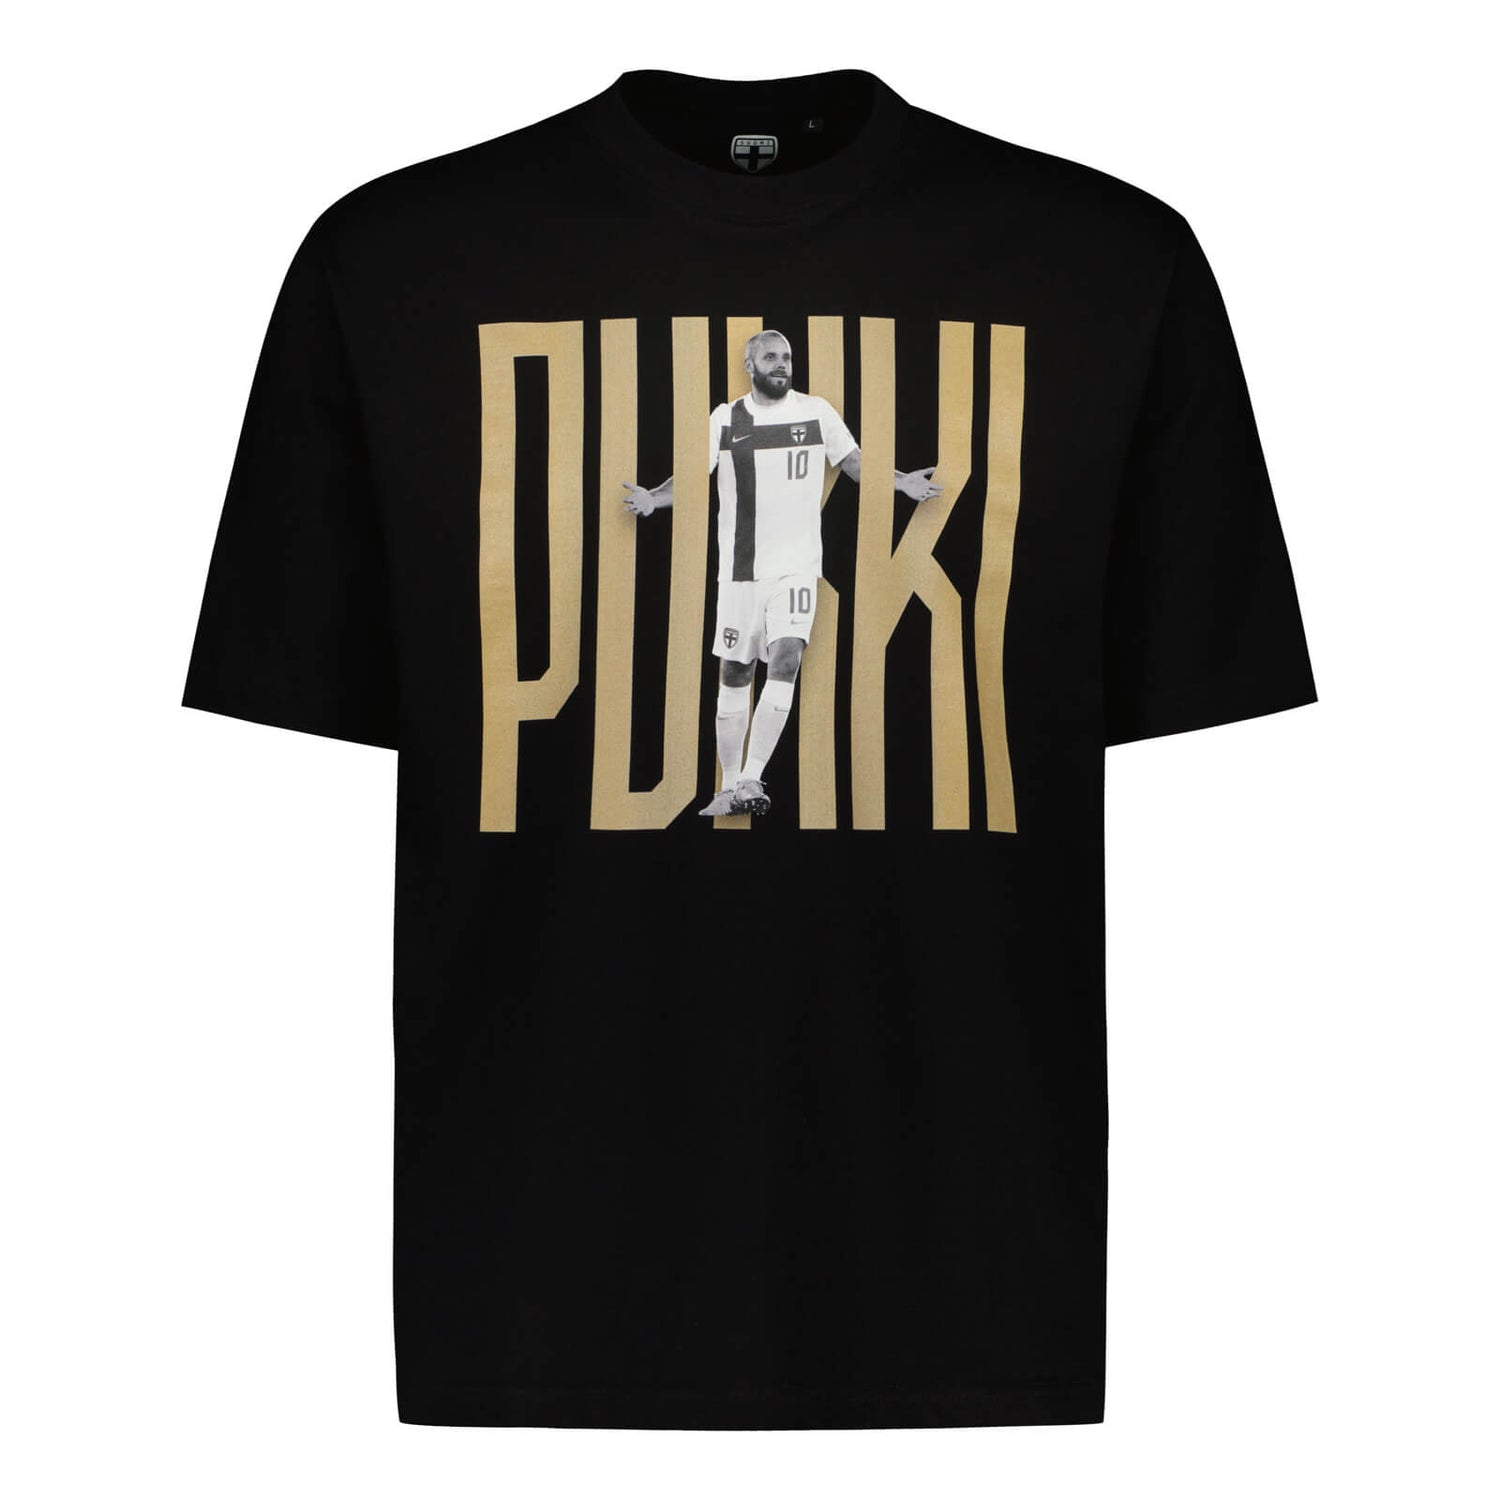 Teemu Pukki Fan T-shirt, Black, Kids